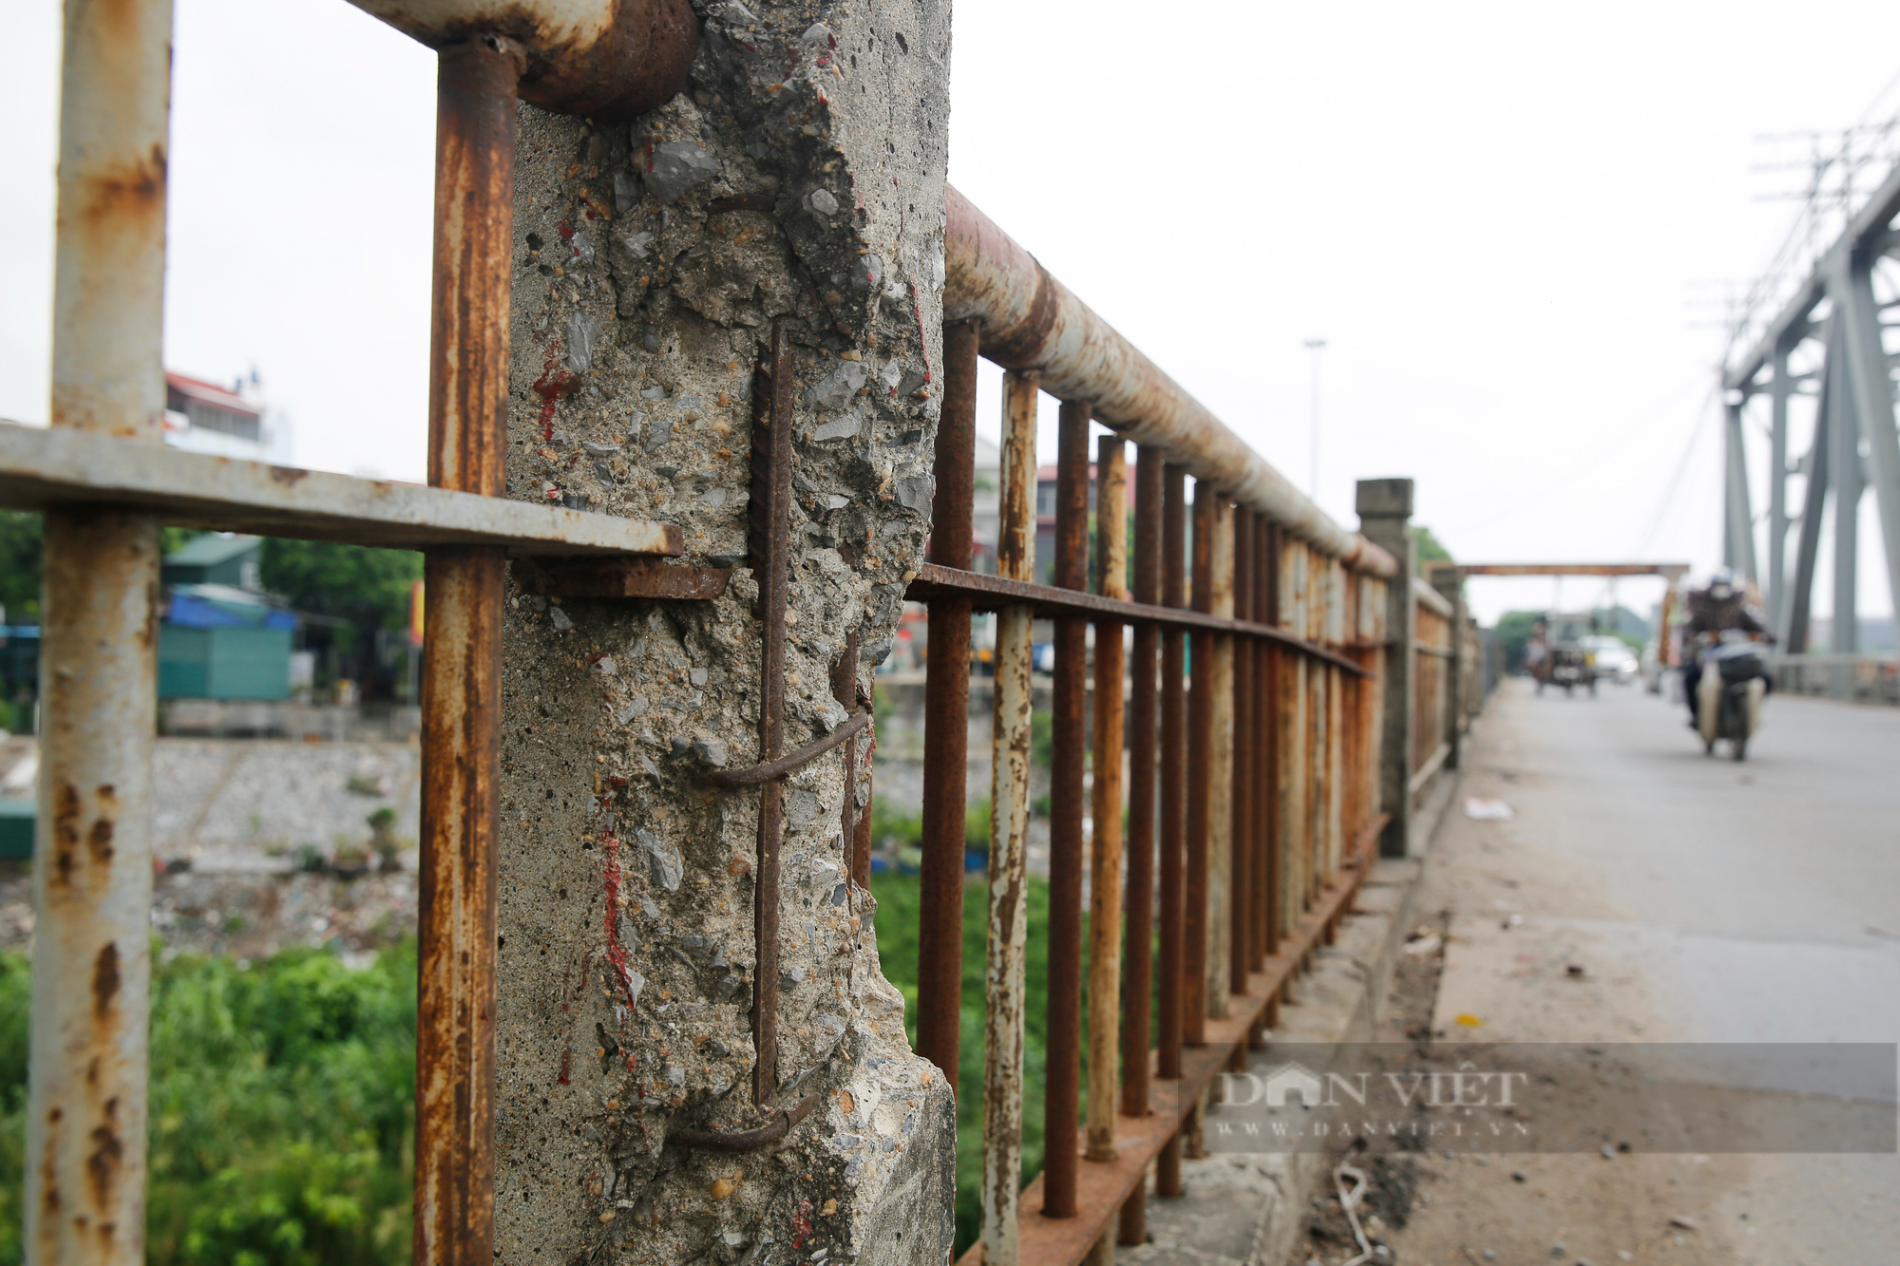 Hà Nội: Cận cảnh cây cầu xuống cấp nghiêm trọng được đề xuất xây mới trị giá gần 1800 tỷ đồng - Ảnh 4.